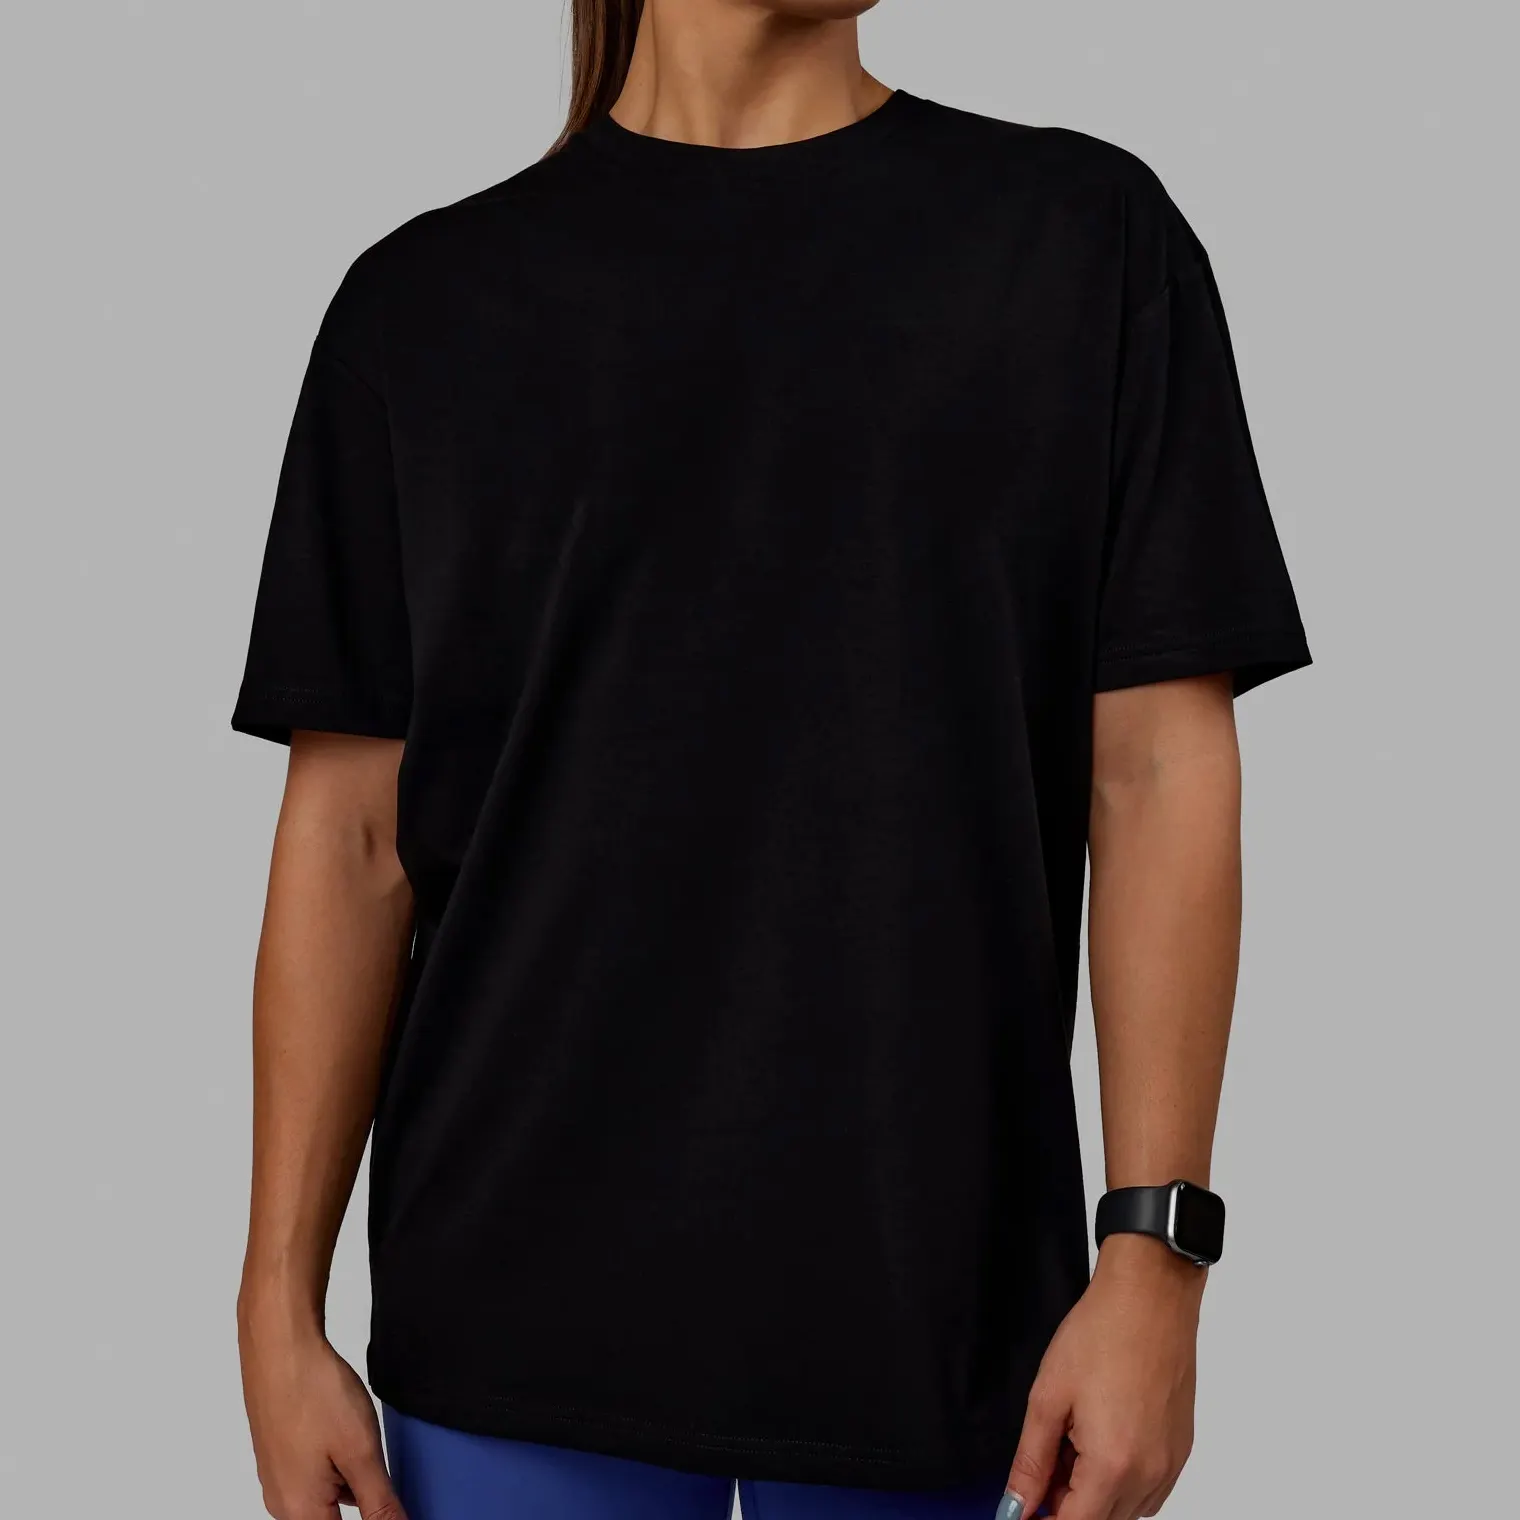 Özel yüksek kalite konfor siyah renkler rahat çift boy spor düz pamuk kısa kollu yuvarlak boyun Unisex erkek t-shirtü